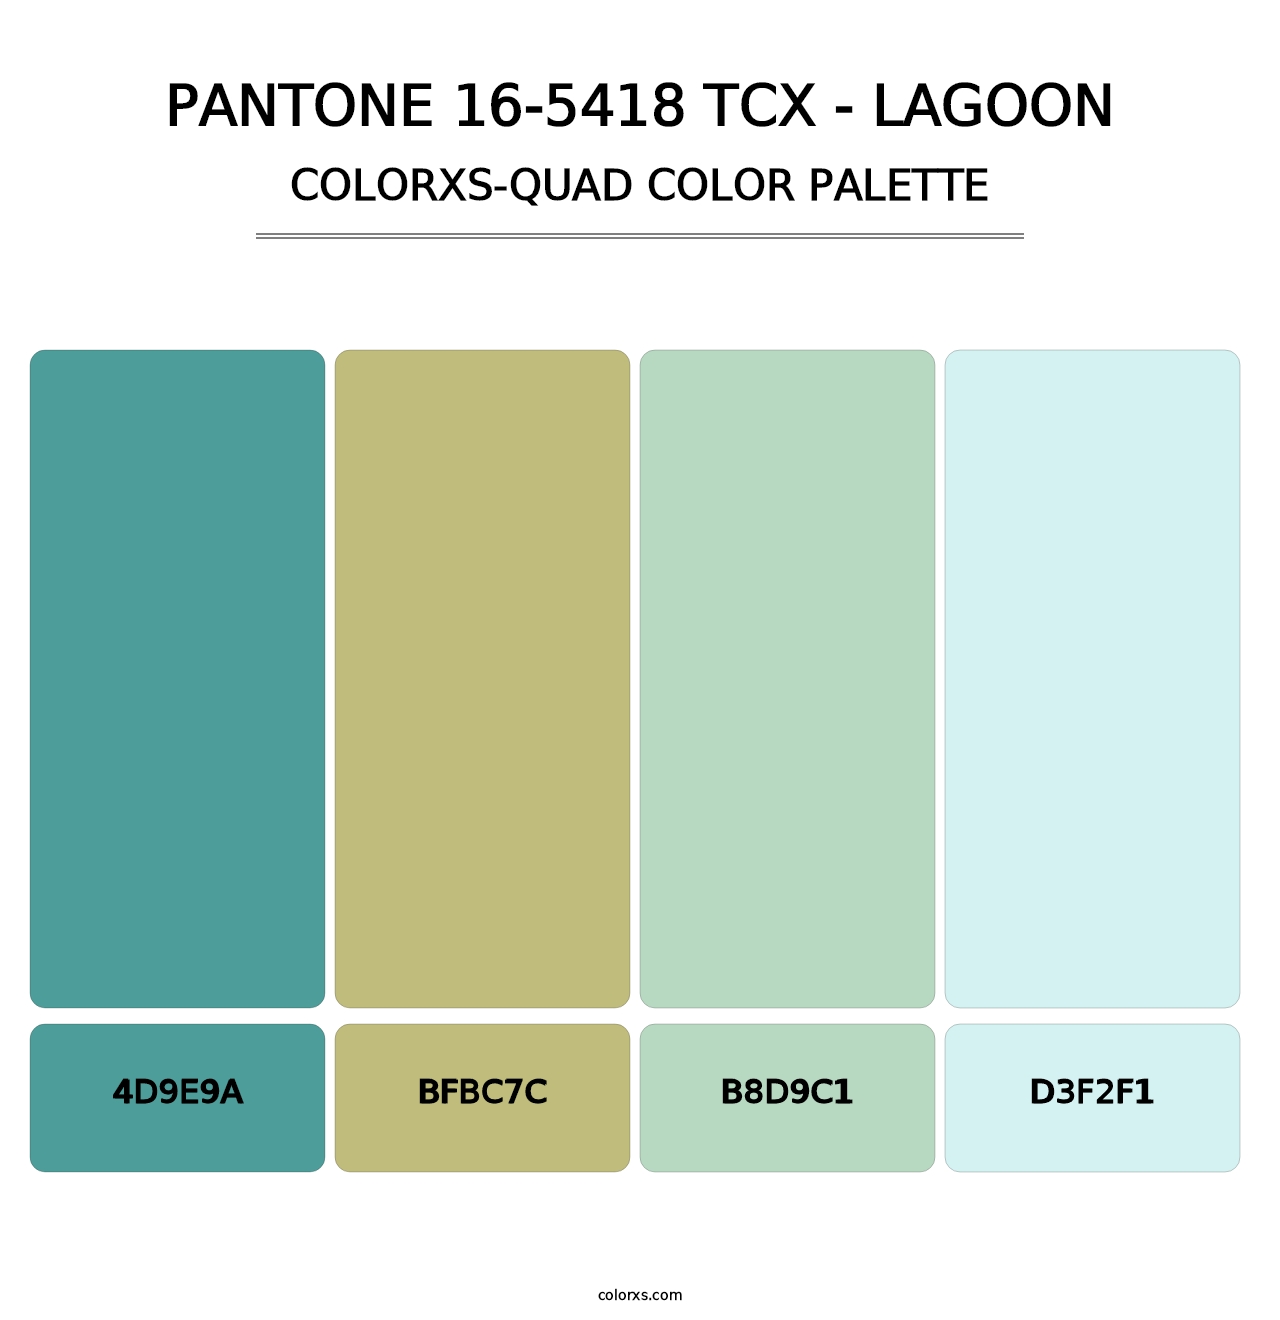 PANTONE 16-5418 TCX - Lagoon - Colorxs Quad Palette